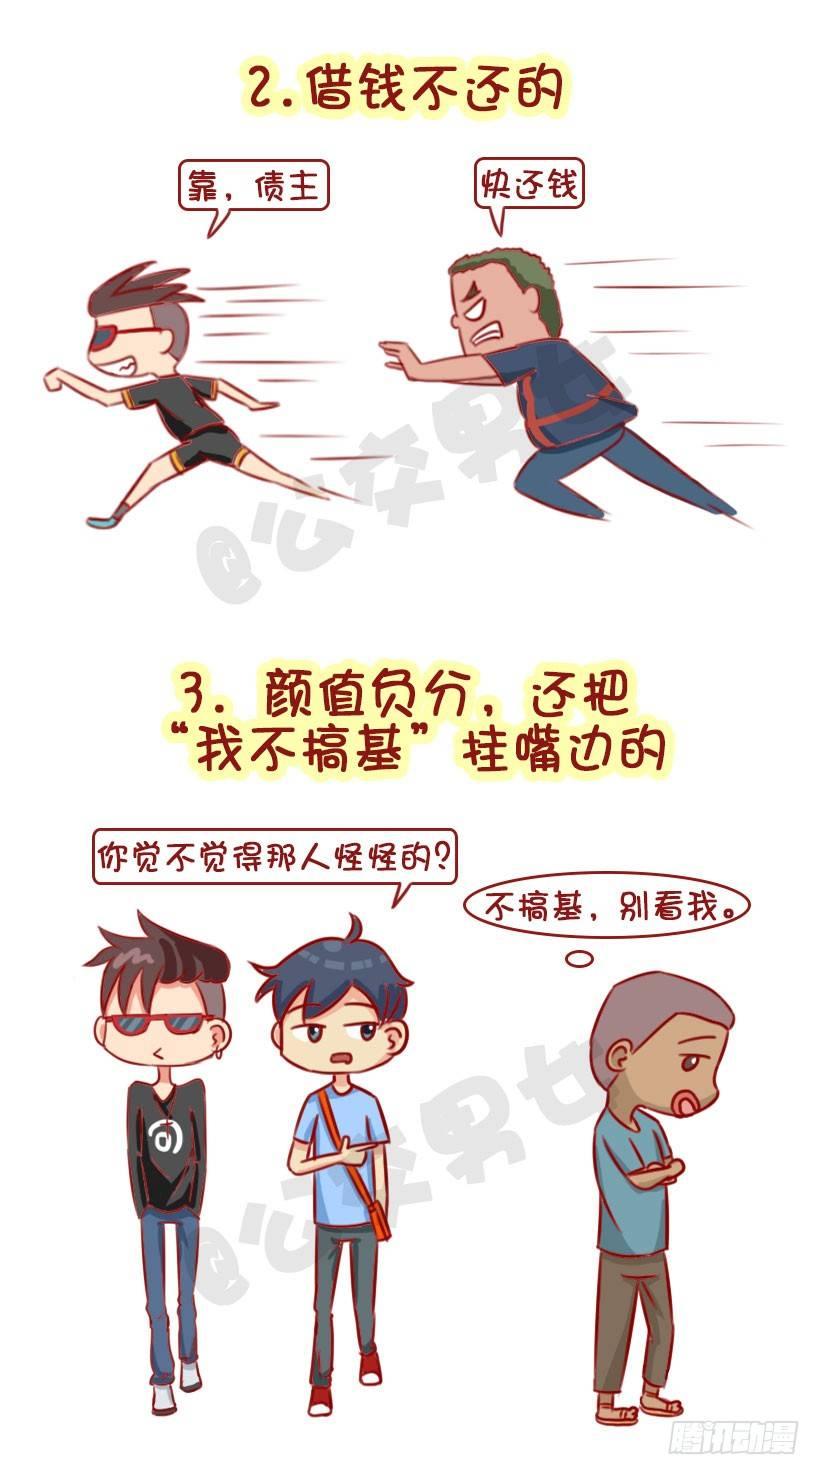 公交男女爆笑漫畫 - 1322-什麼男生令同性討厭 - 1